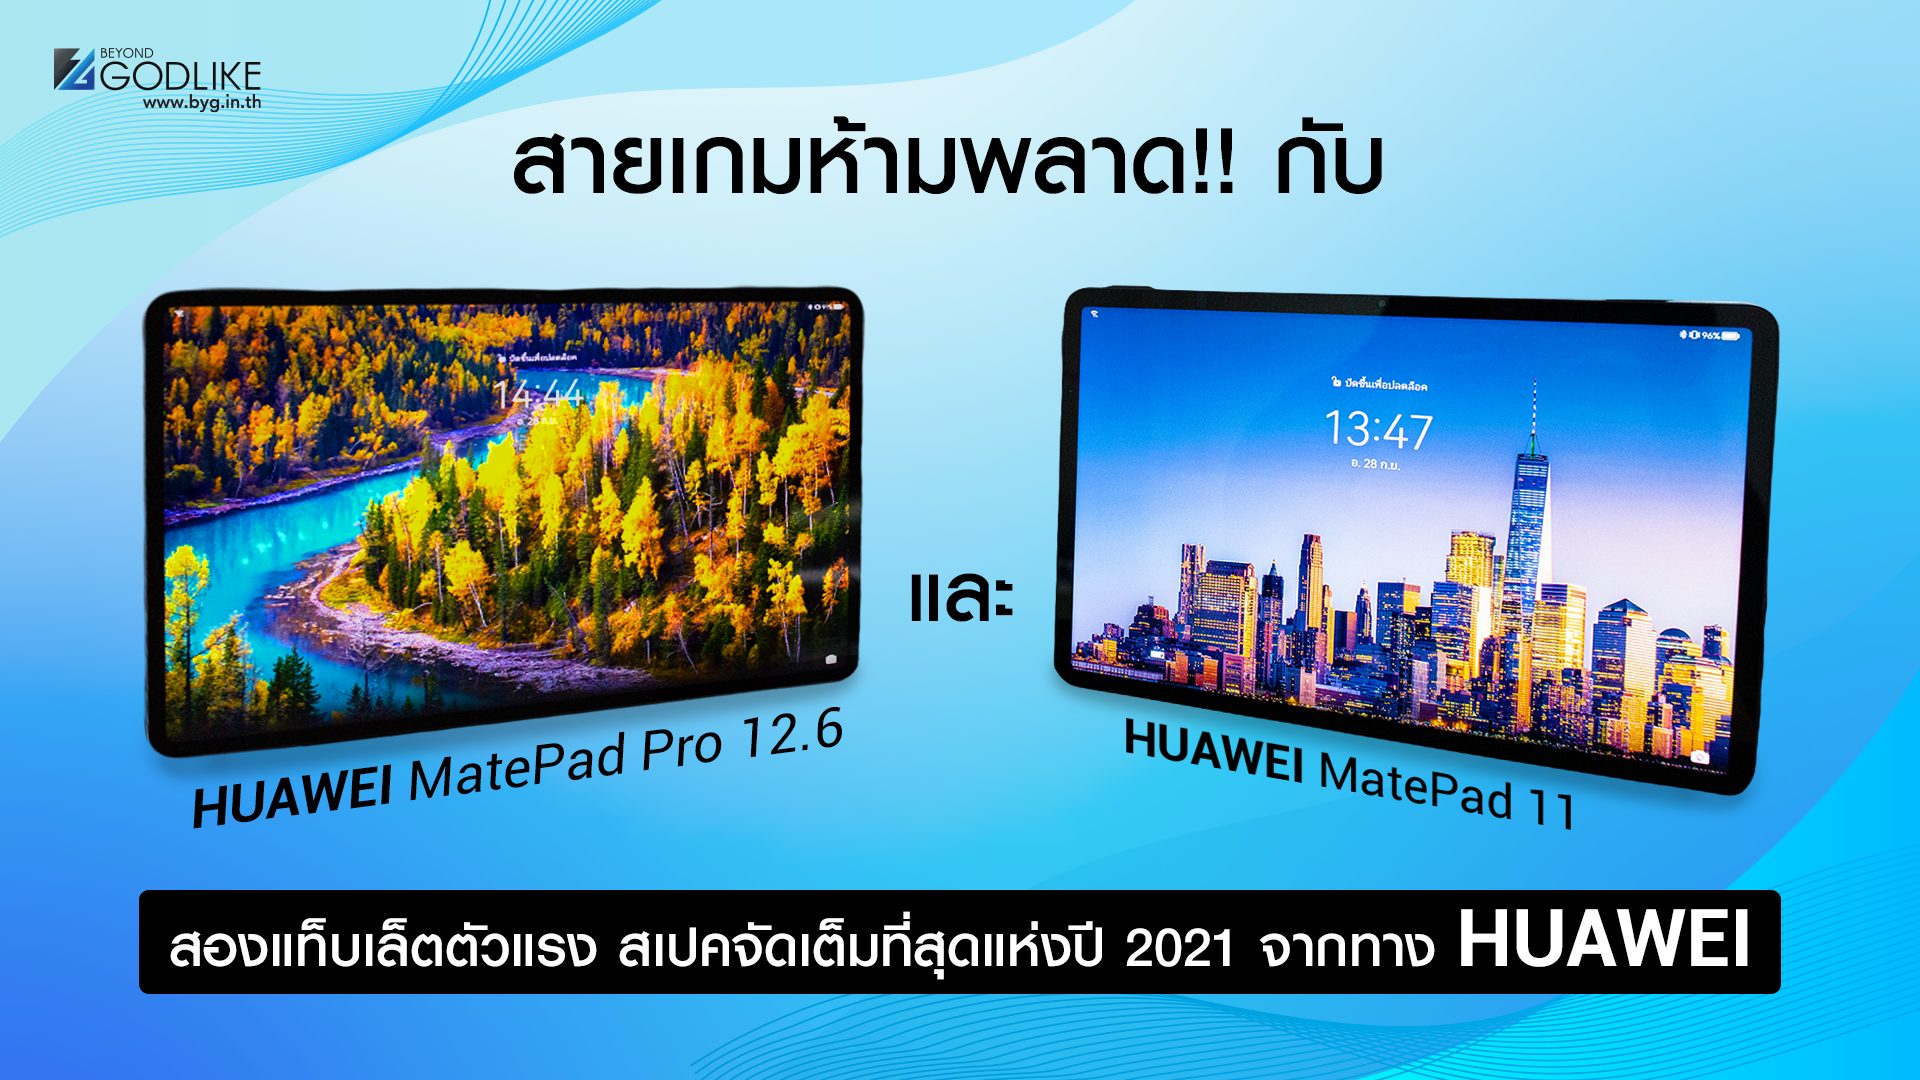 สายเกมห้ามพลาด!! กับ HUAWEI MatePad Pro 12.6 และ HUAWEI MatePad 11 สองแท็บเล็ตตัวแรง สเปคจัดเต็มที่สุดแห่งปี 2021 จากทาง HUAWEI